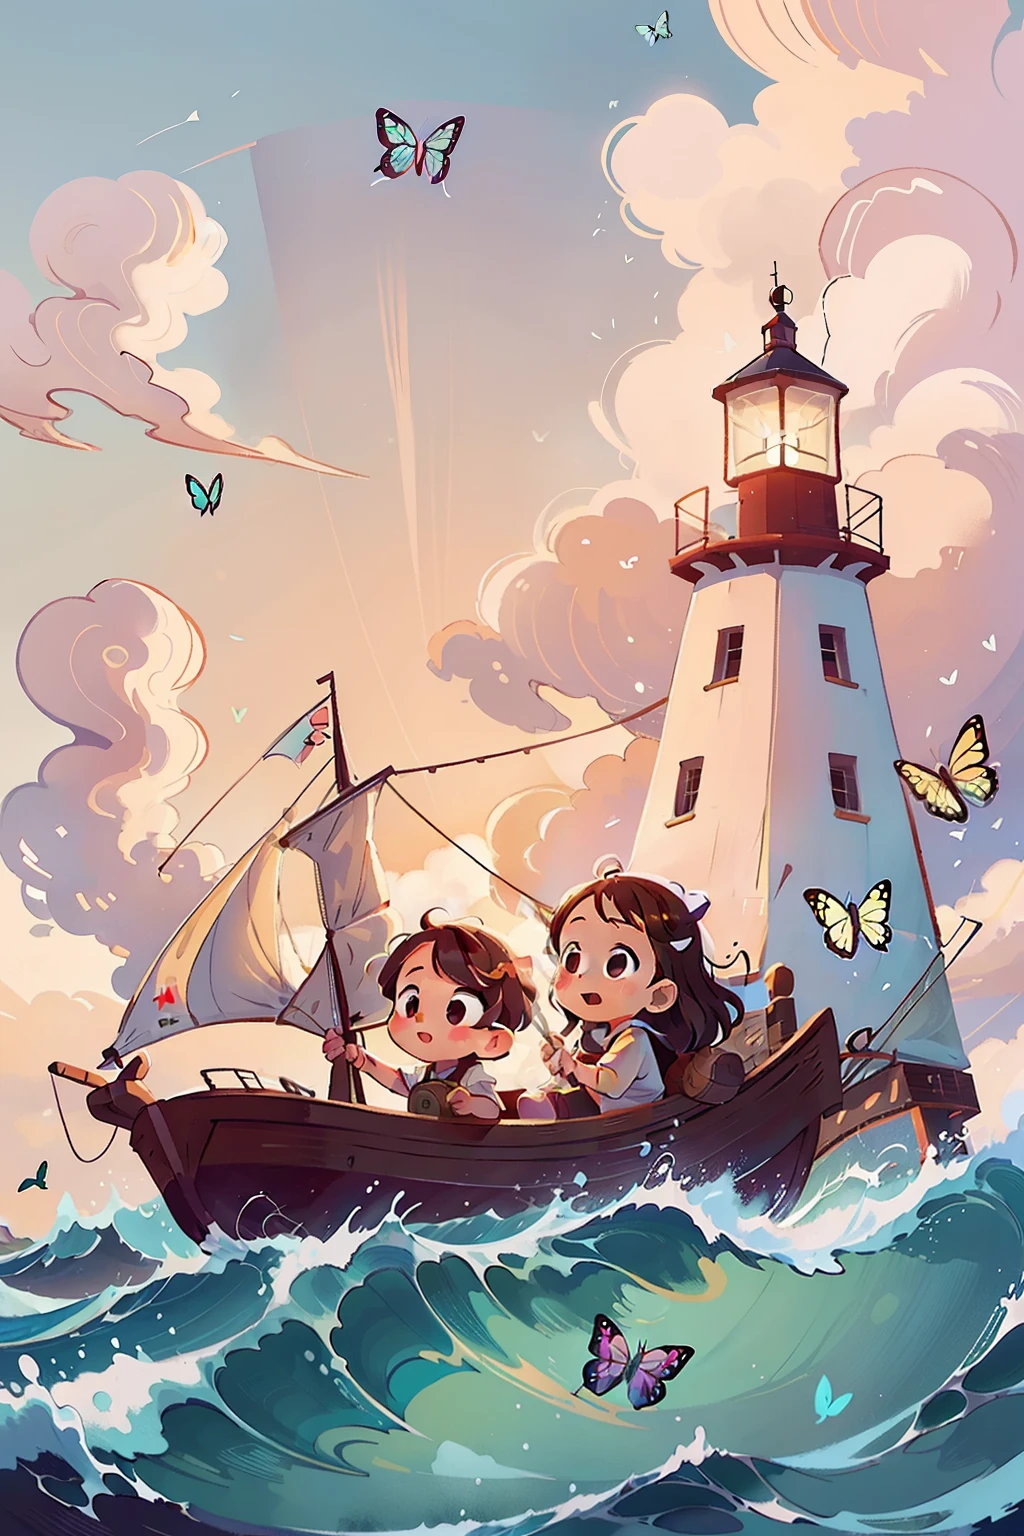 보트를 타고 항해하는 두 명의 아주 어린 소녀의 이미지를 생성합니다., 파도, 바다, 흰 구름이 있는 하늘. 화려한 나비, 백그라운드에서 등대,